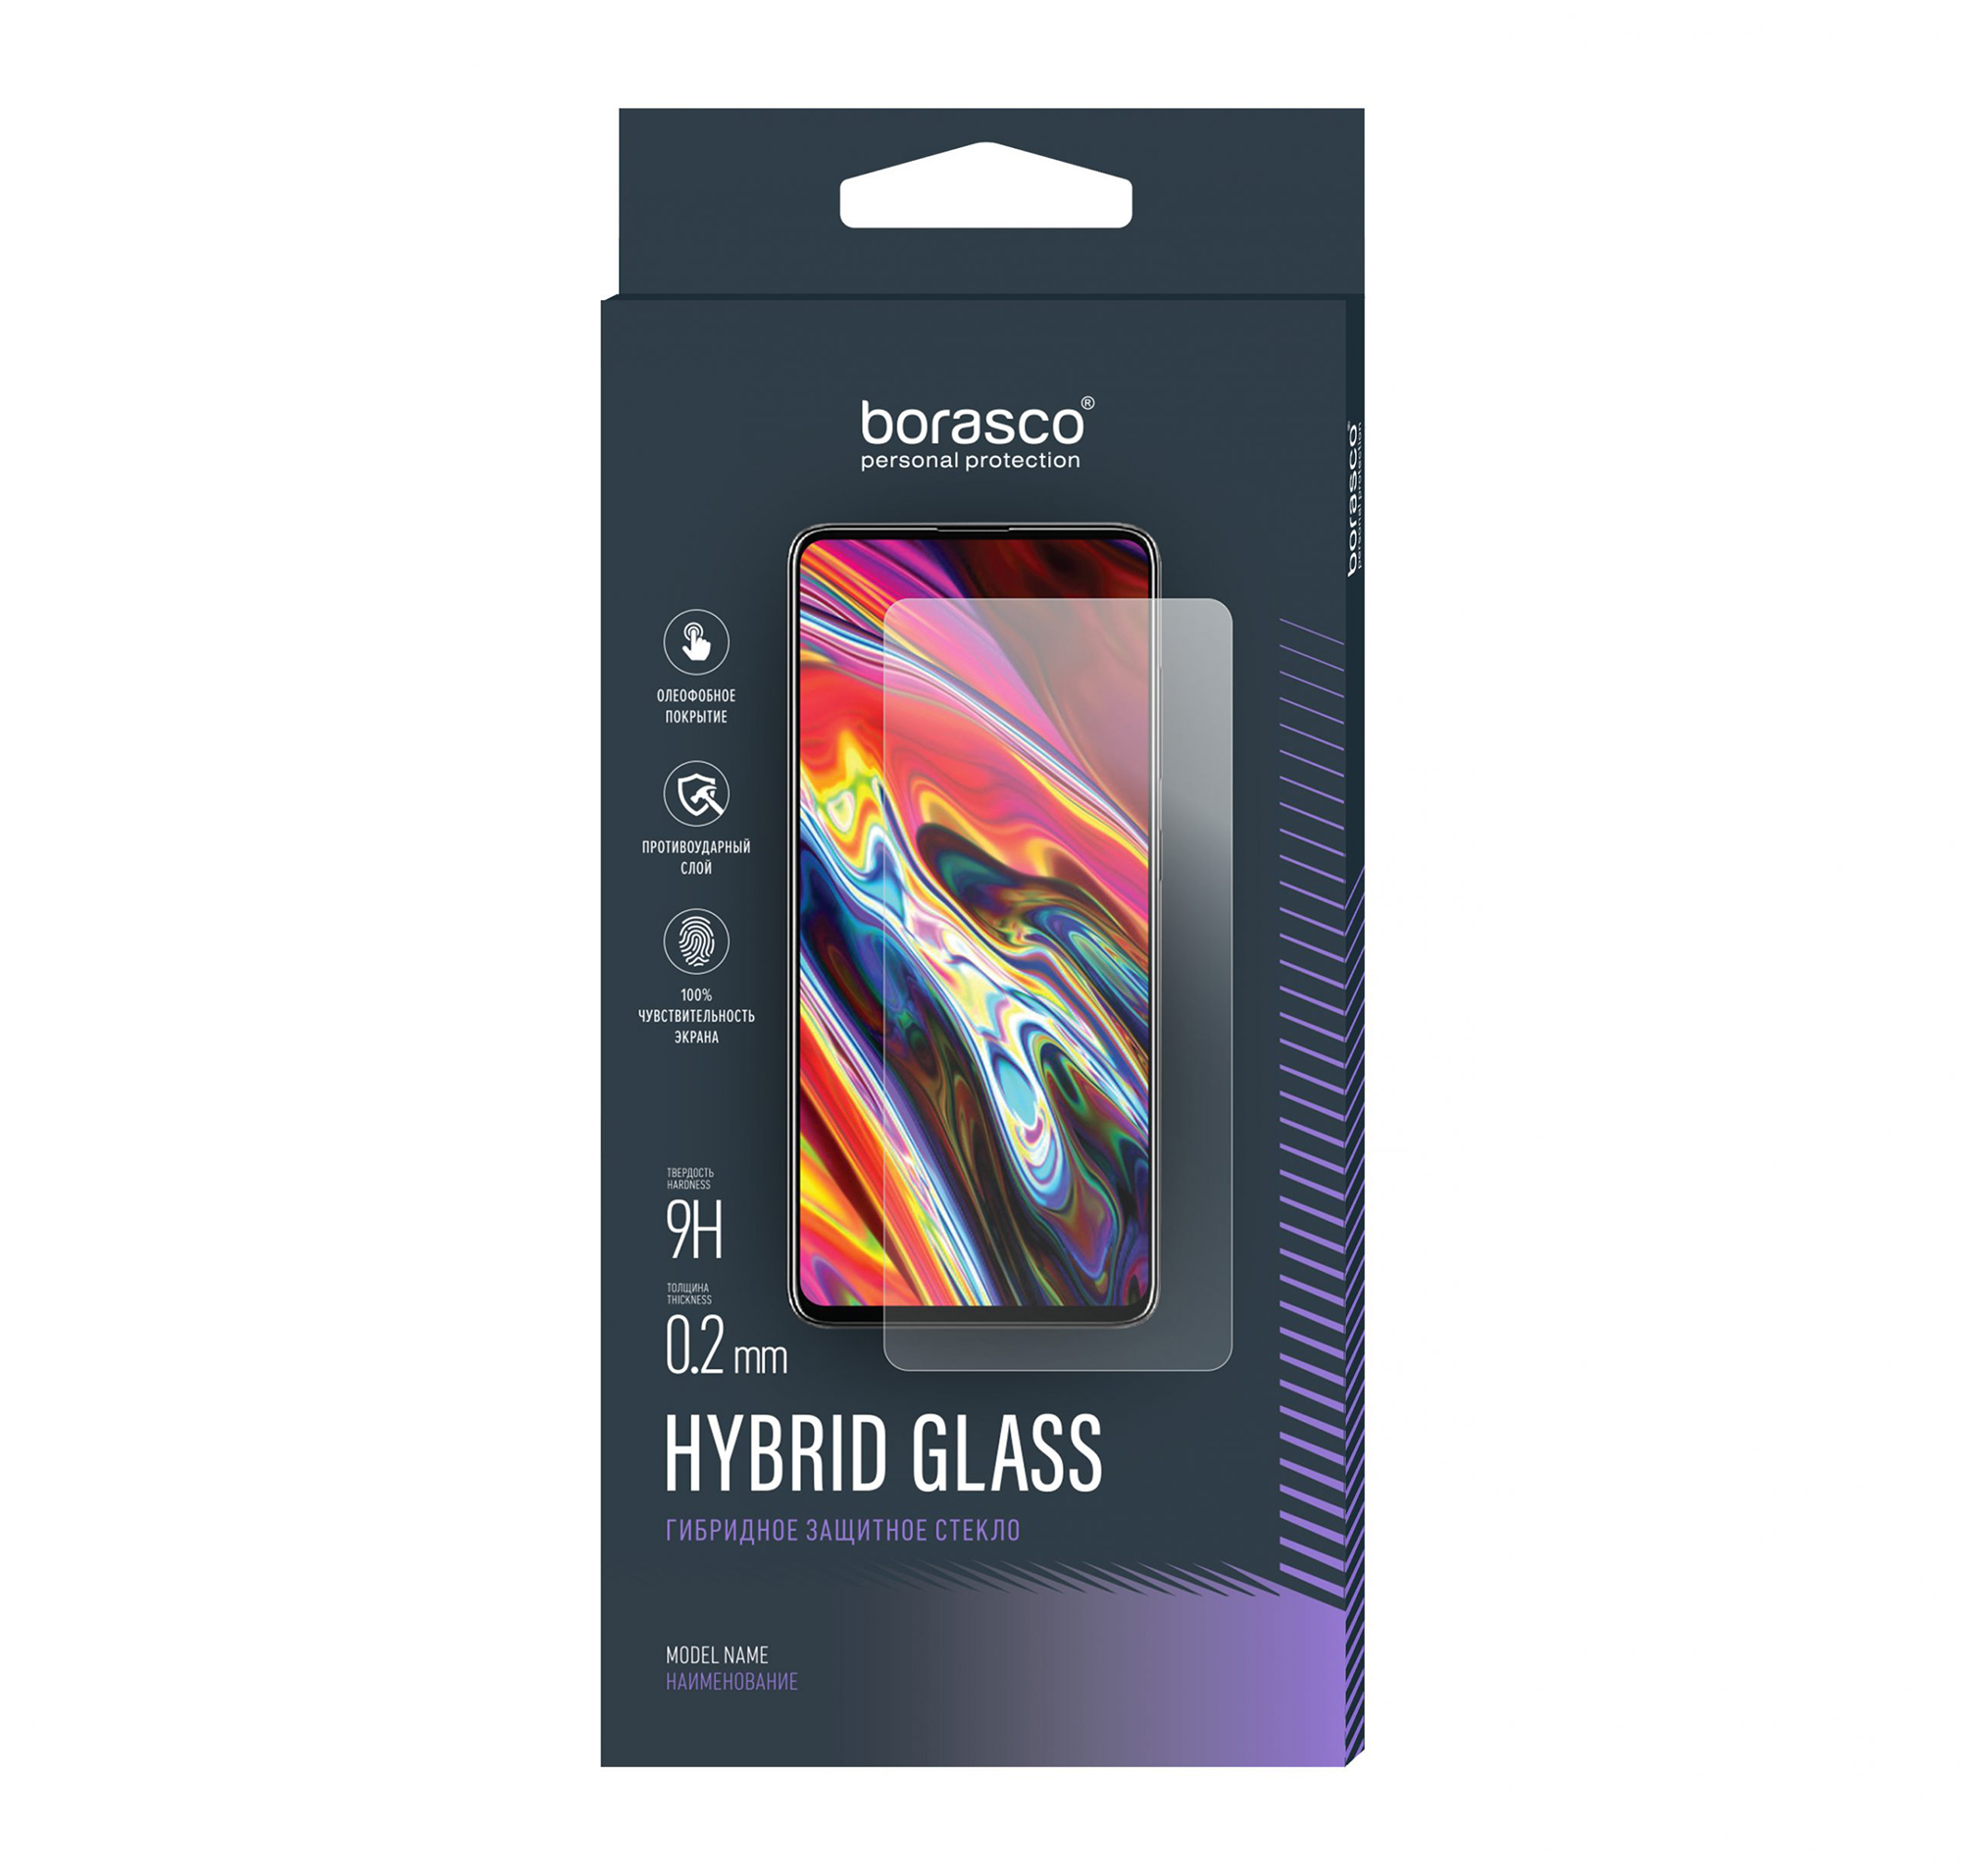 Защитное стекло Hybrid Glass для Apple iPad Pro 11 (2018/ 2020) защитная гидрогелевая пленка для apple ipad pro 11 2018 2020 2021 матовая на экран для планшета